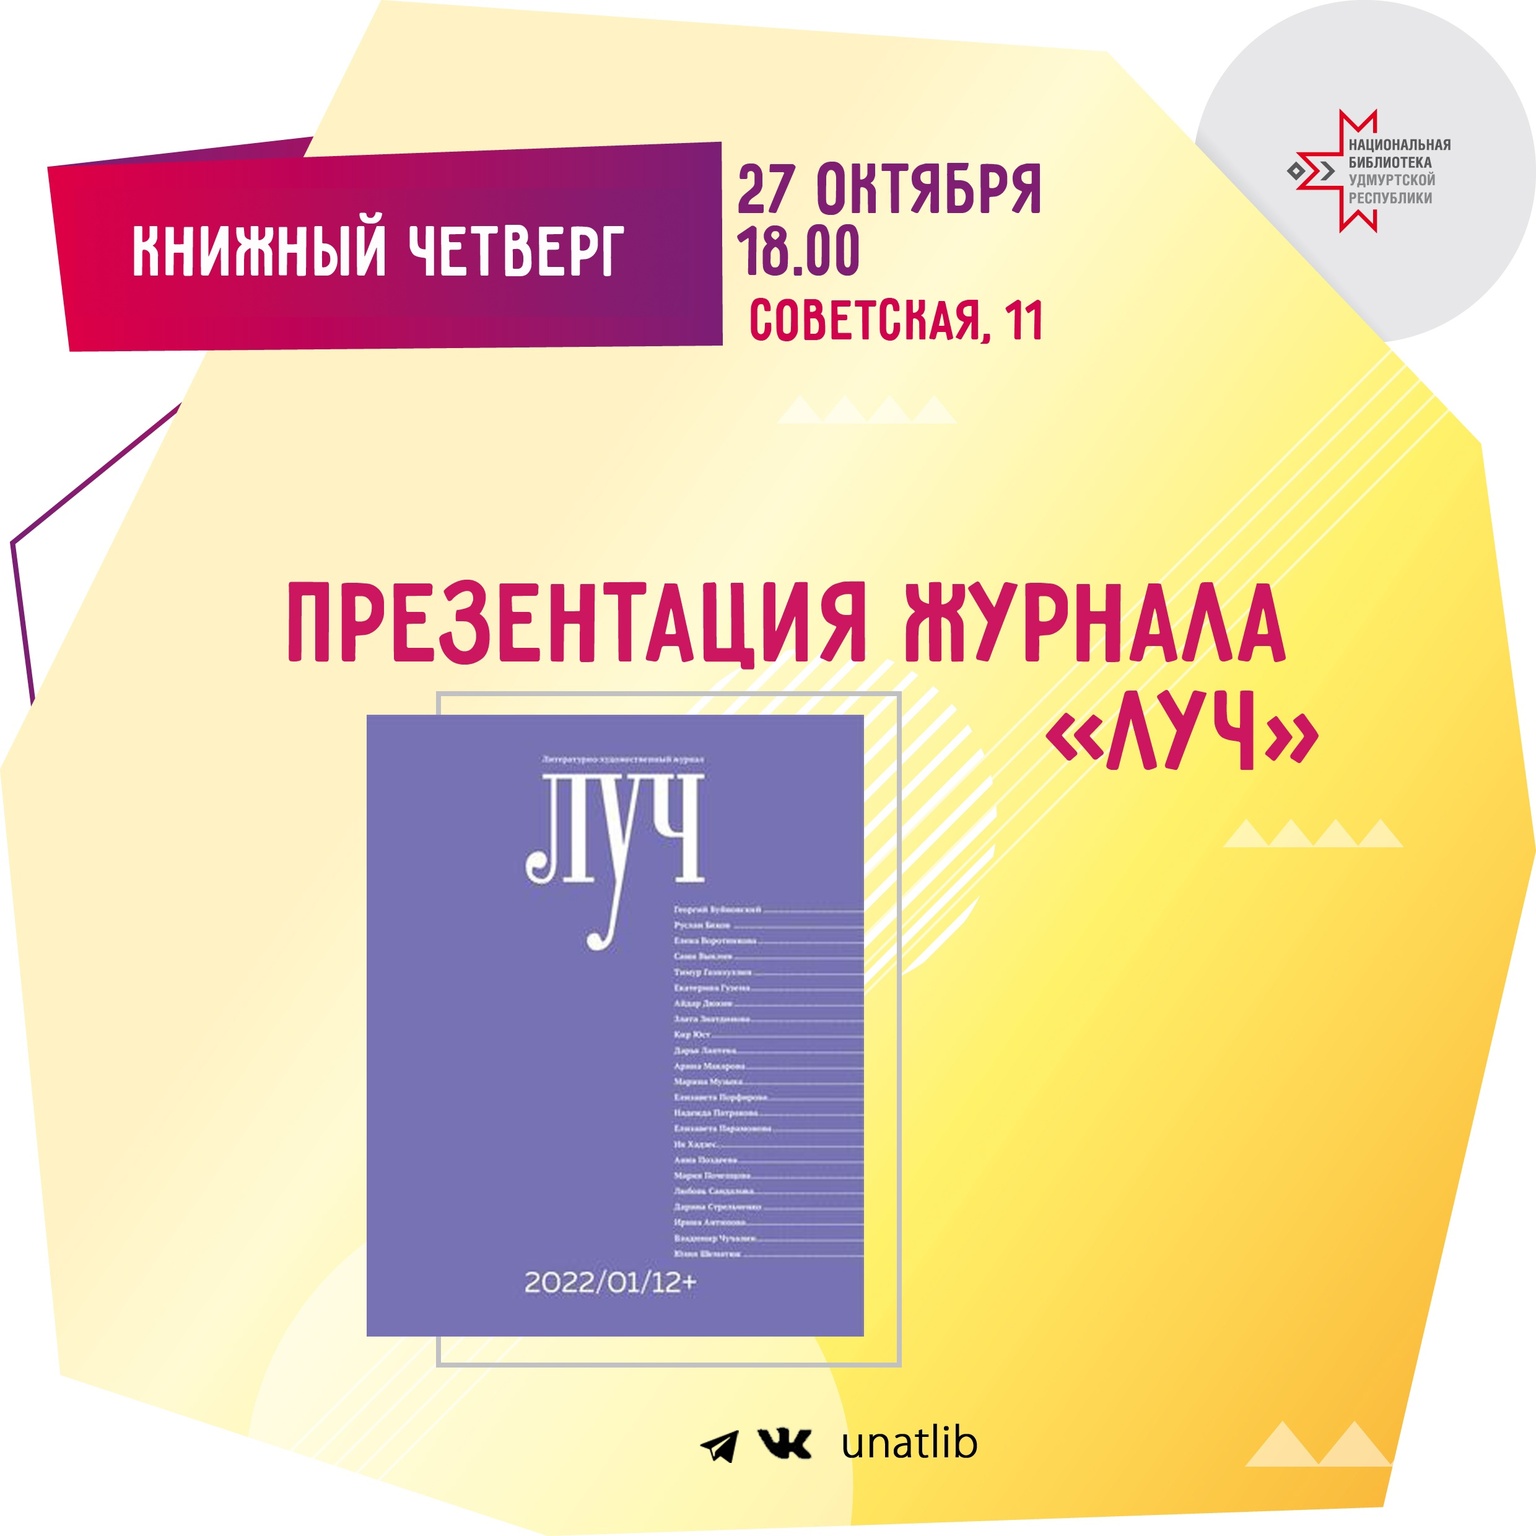 Афиша Ижевска — Книжный четверг в Национальной библиотеке